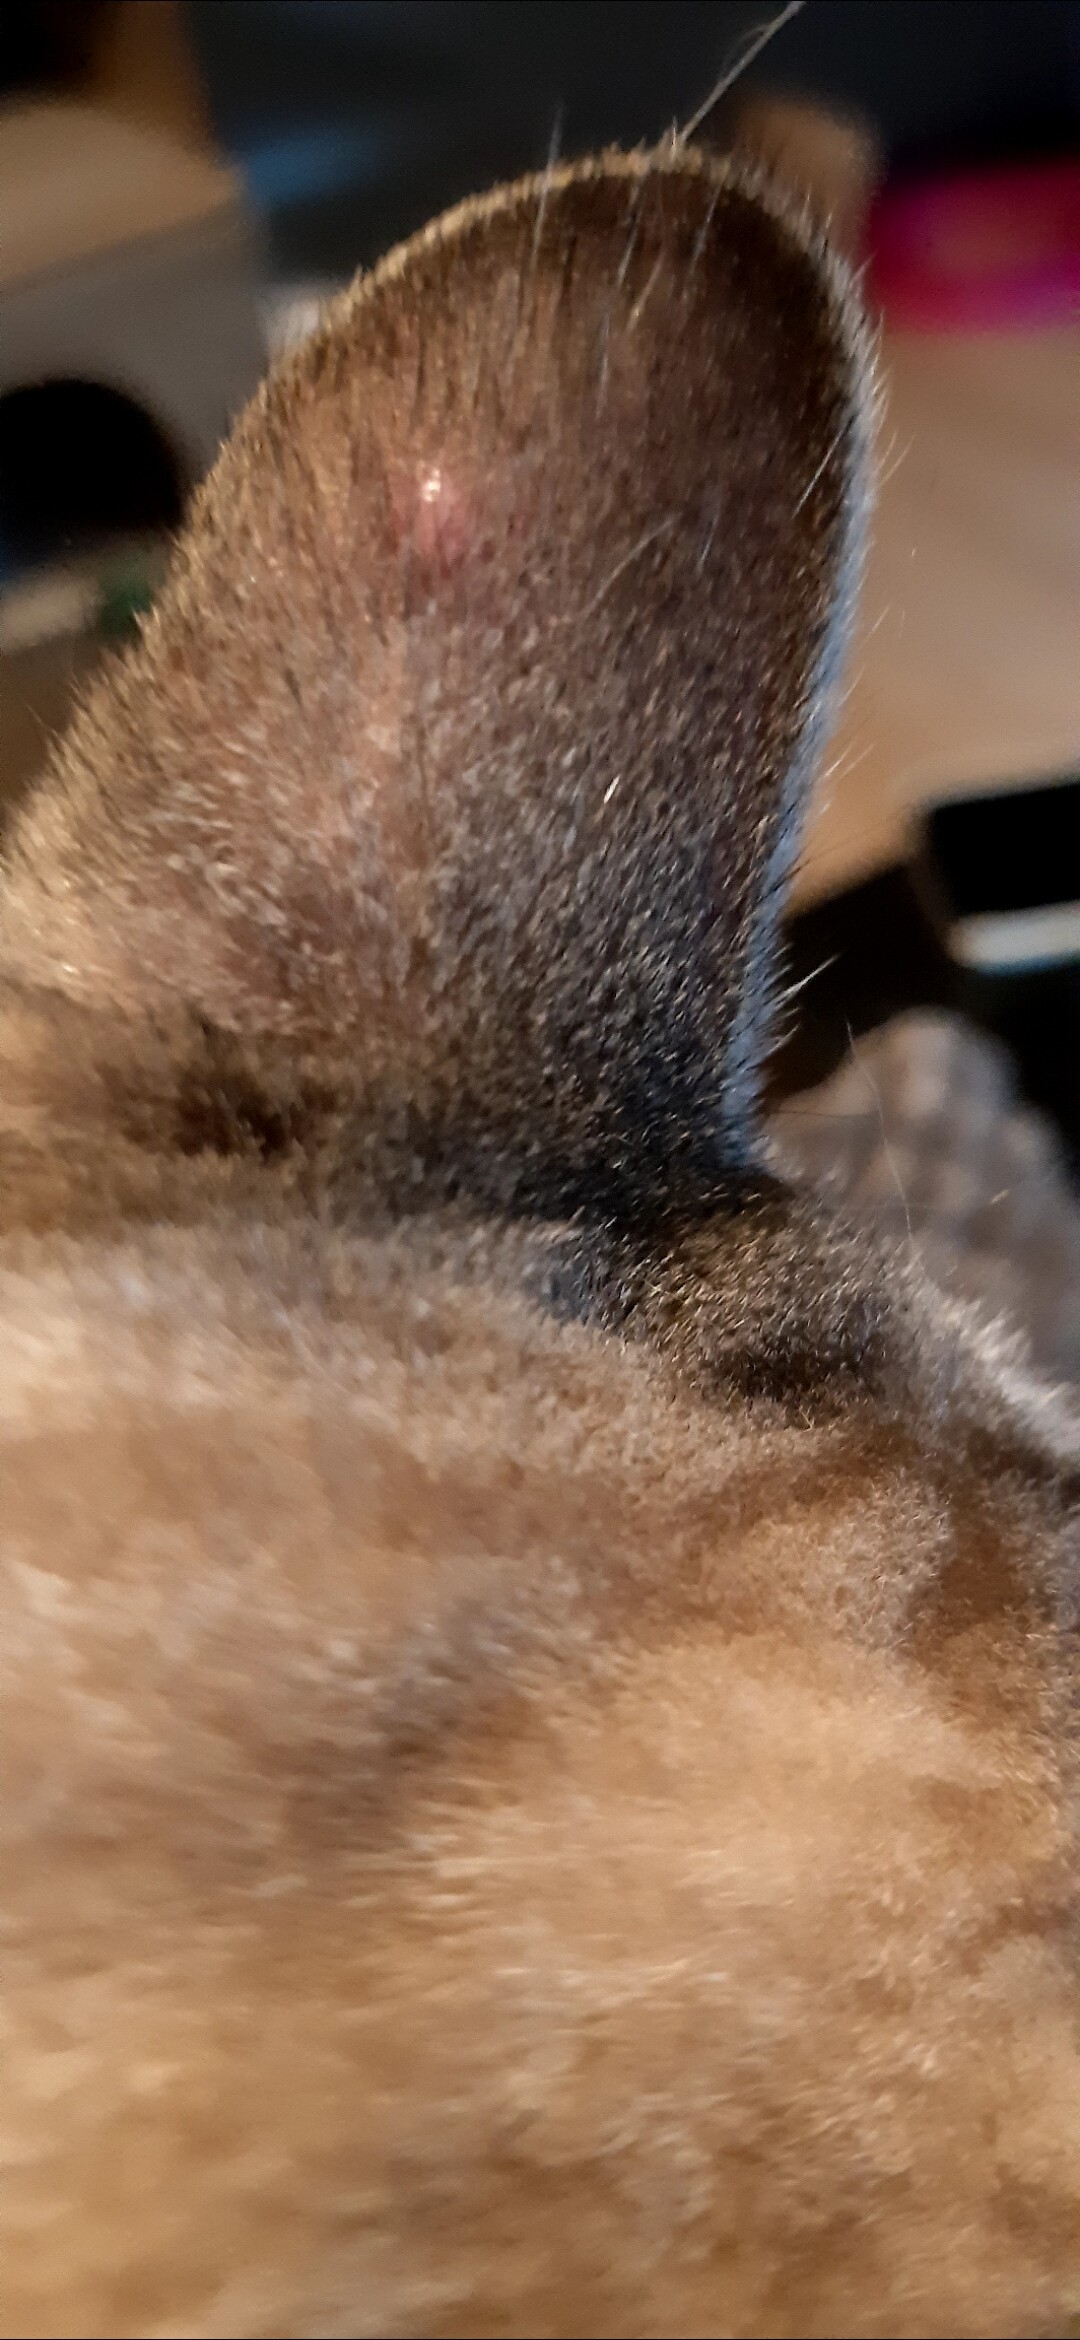 Bouton sur l'oreille de mon chat - La santé de votre chat - Chats